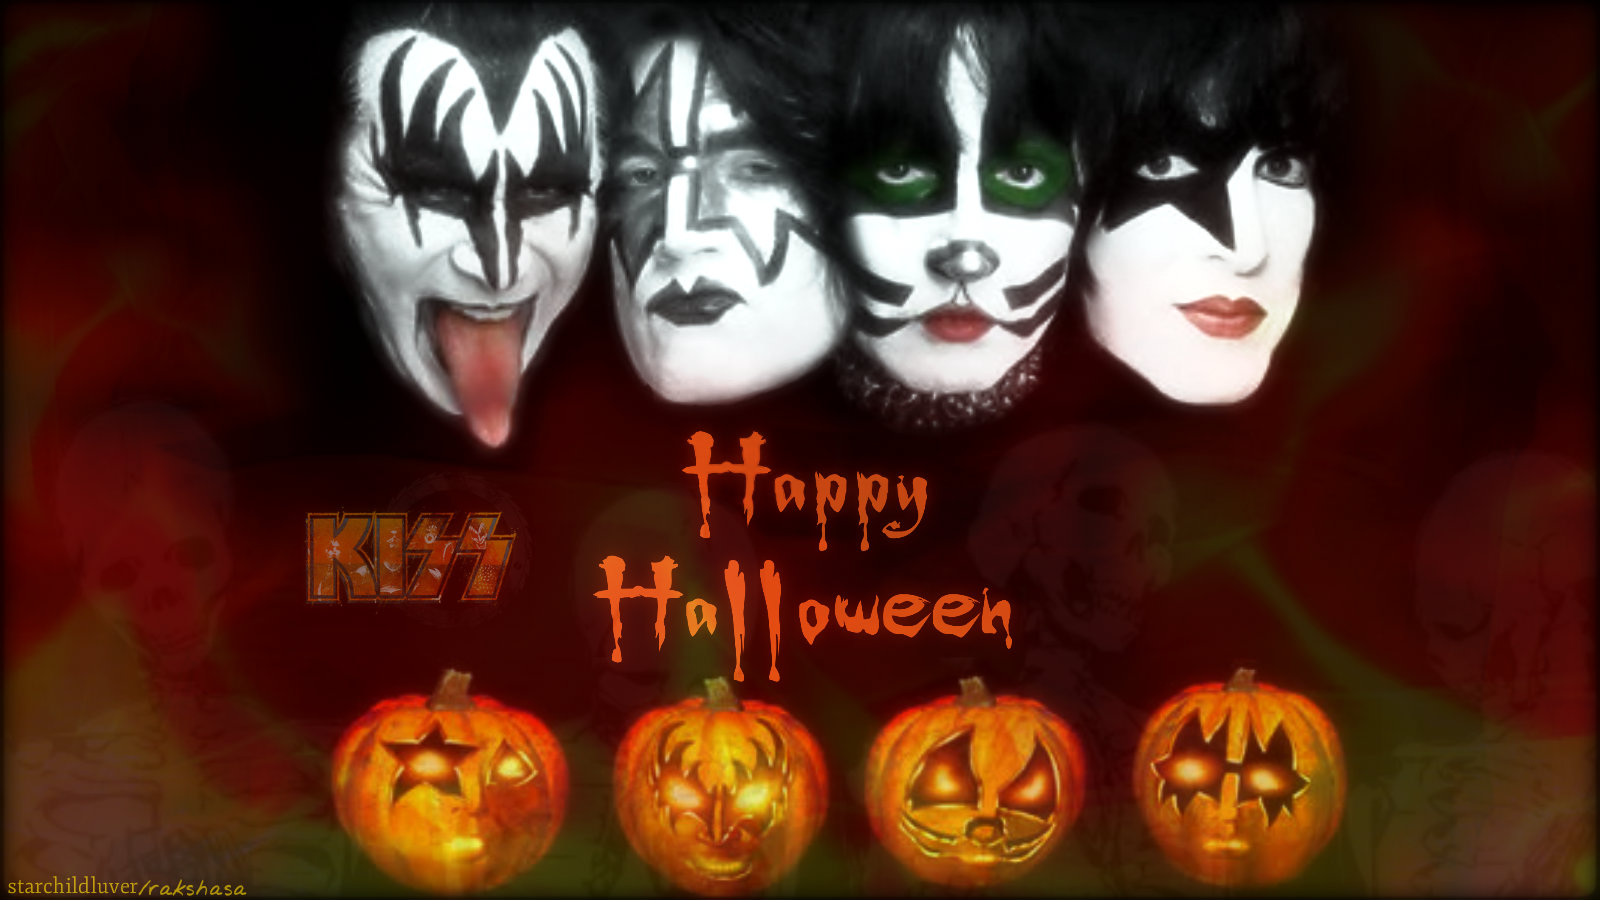 Happy Halloween - KISS Wallpaper (37661664) - Fanpop